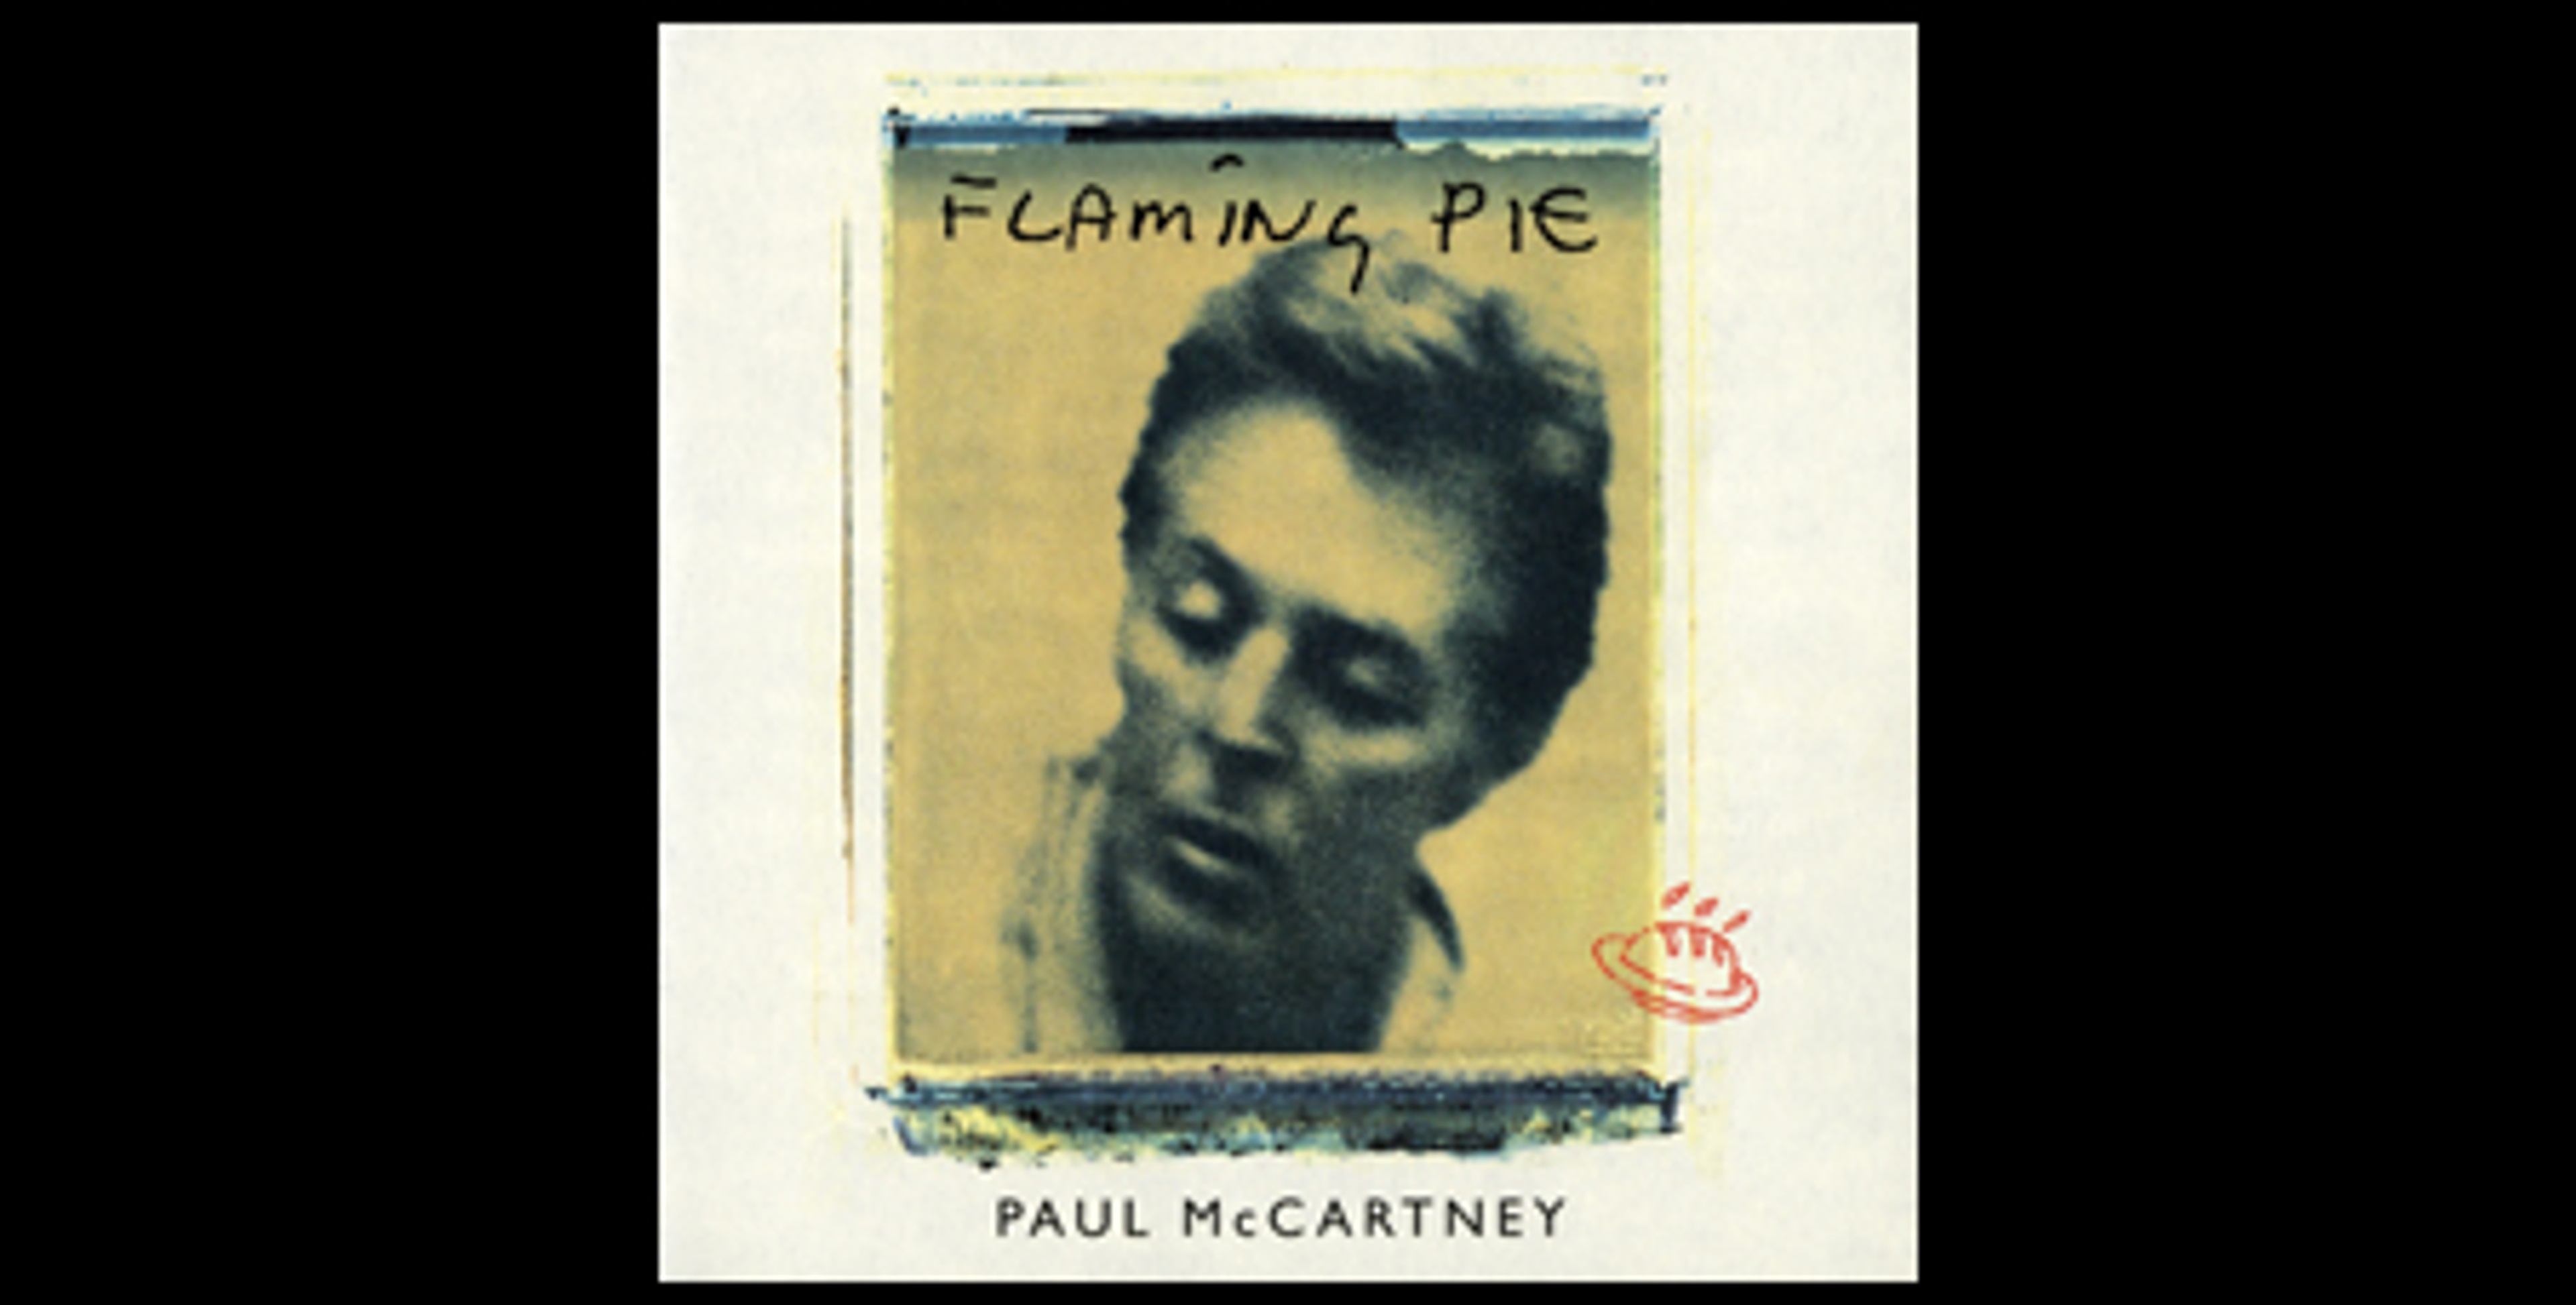 Paul McCartney 'Flaming Pie' - Track of the Week